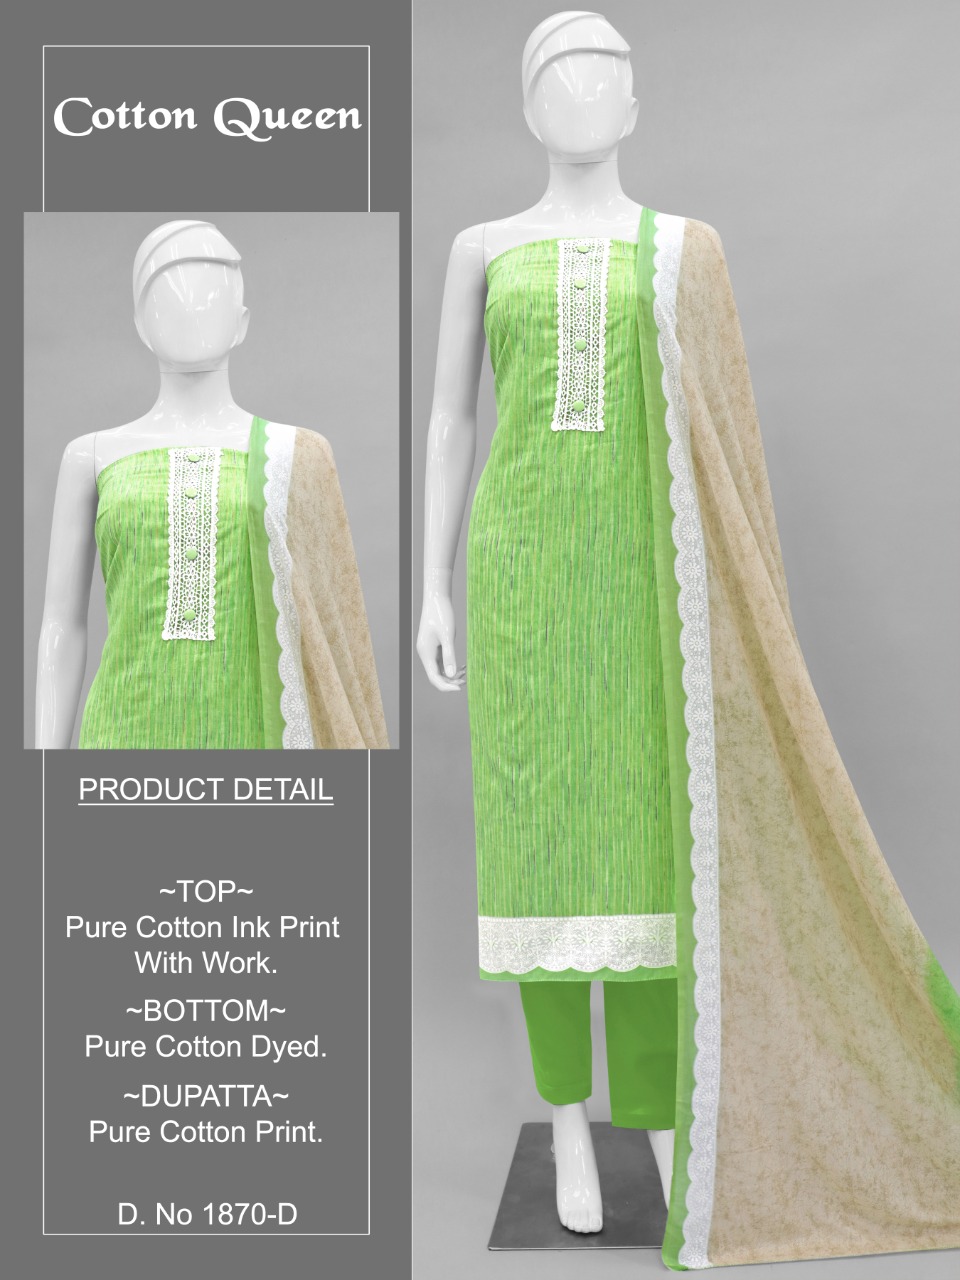 Bipson cotton queen 1870 cotton regal look salwar suit colour set